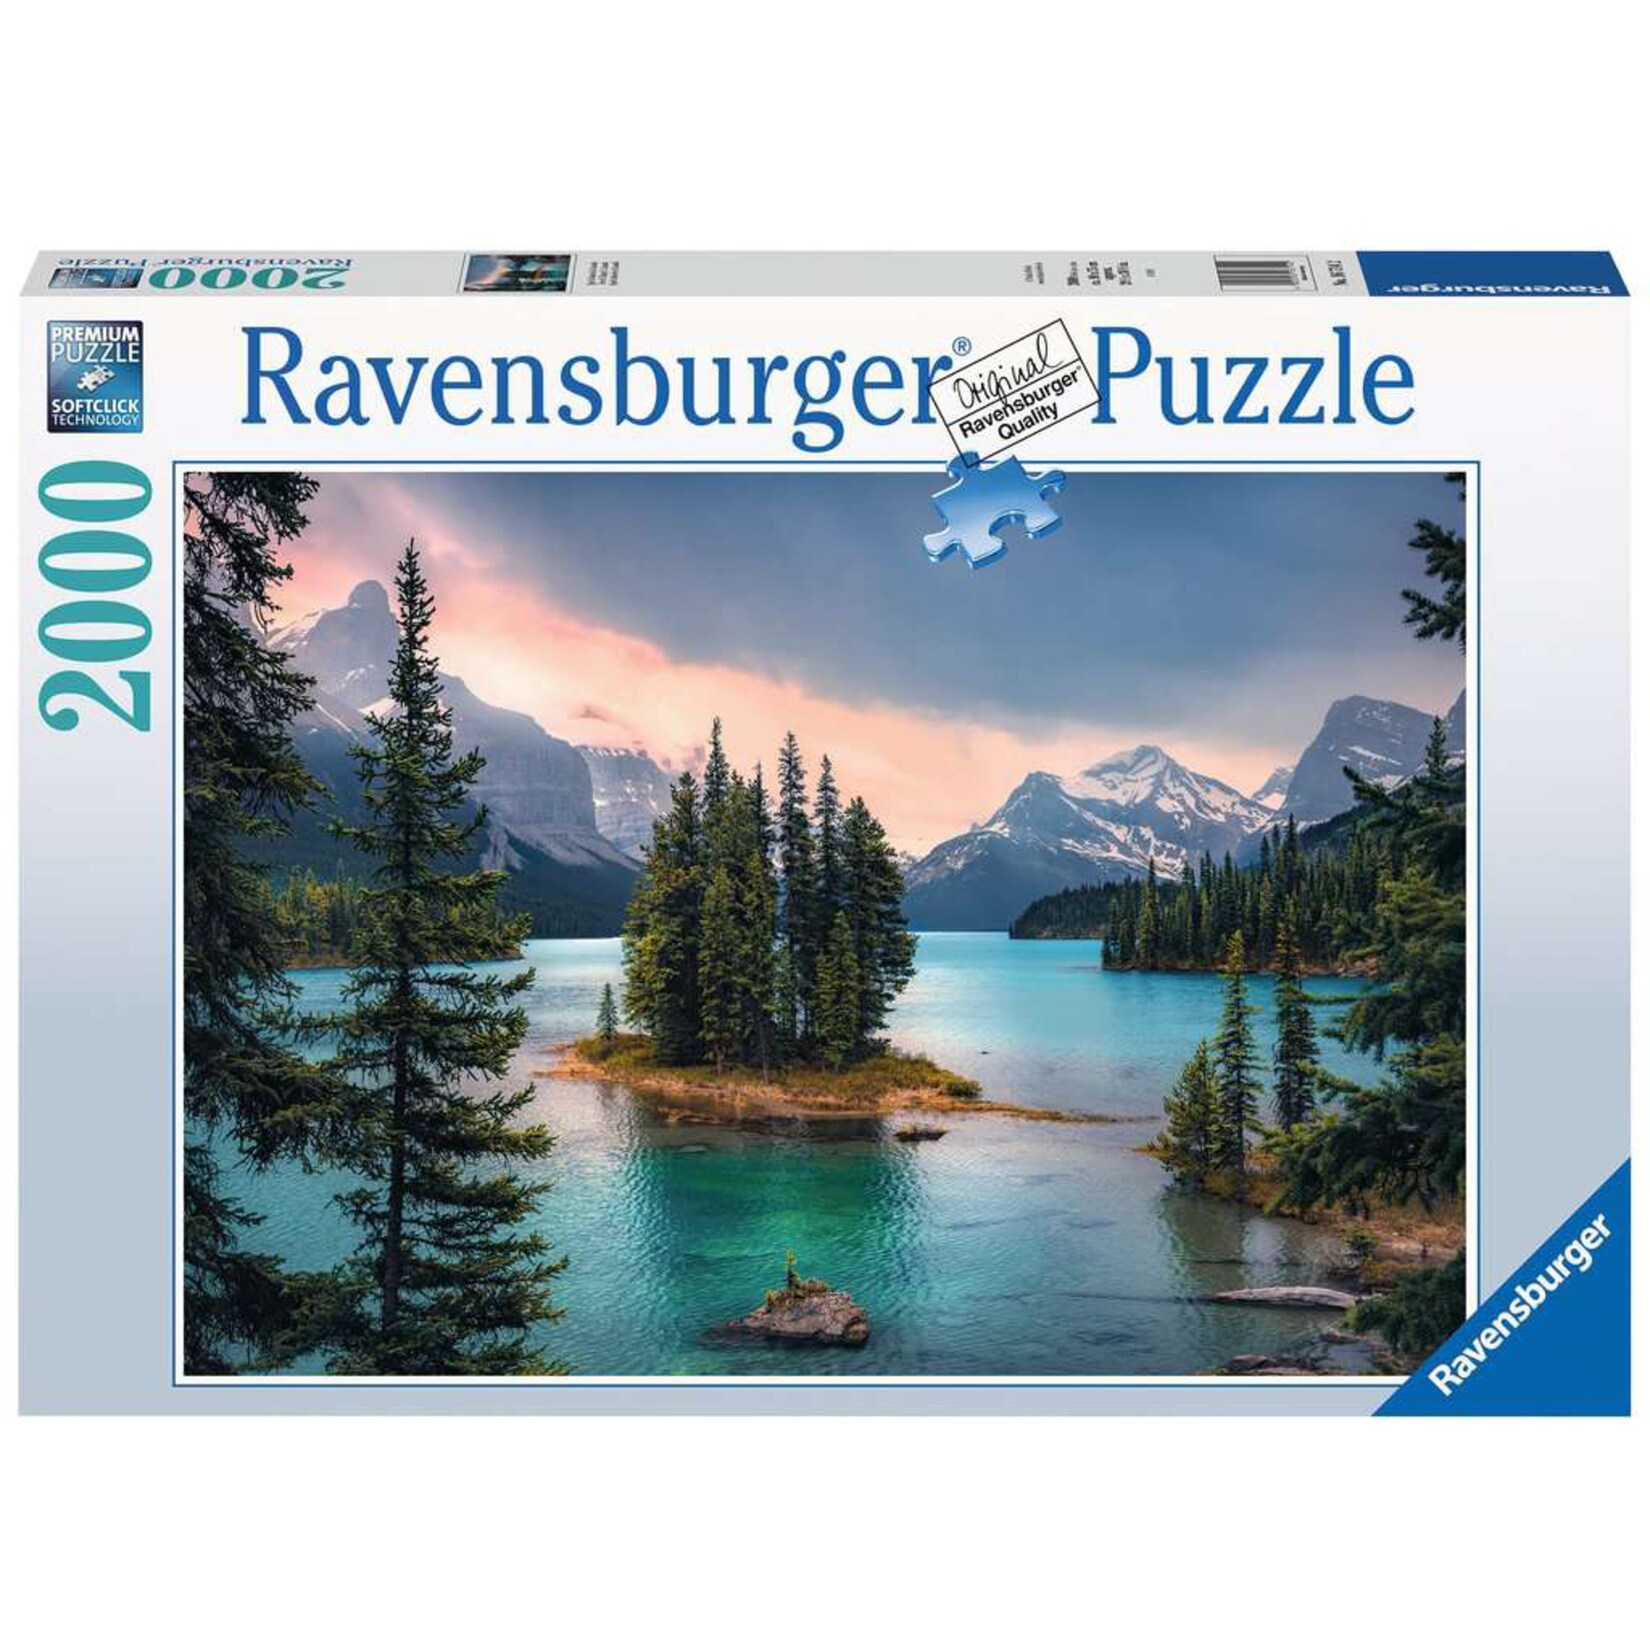 Ravensburger Puzzle Puzzle "Spirit Island" Canada